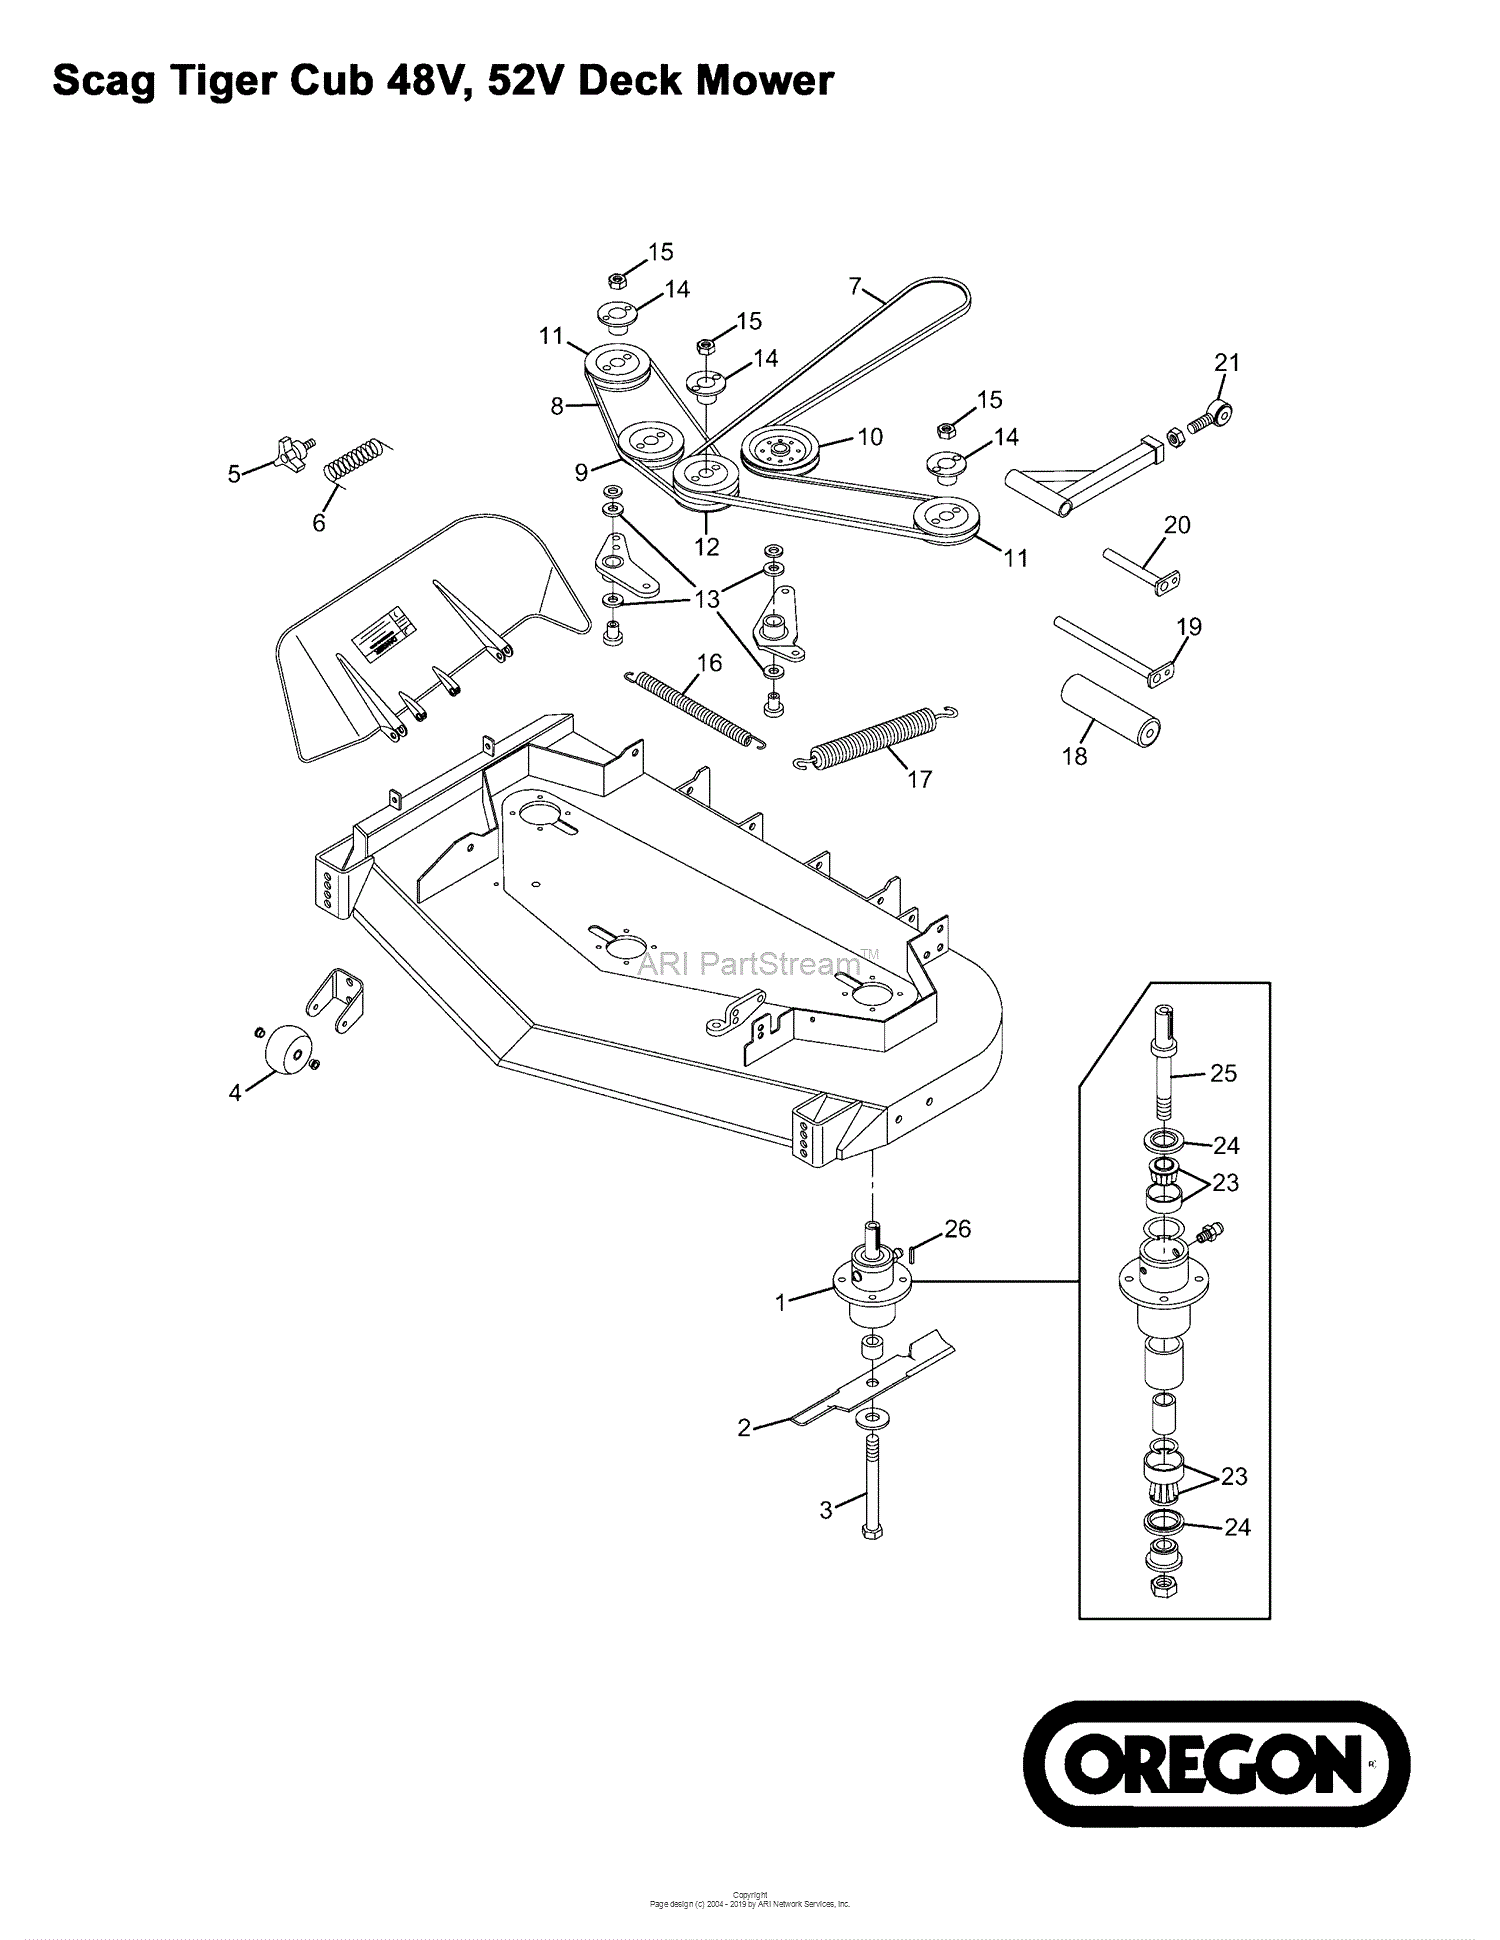 Oregon Scag  Parts  Diagram for Scag  Tiger  Cub  48V 52V Deck 